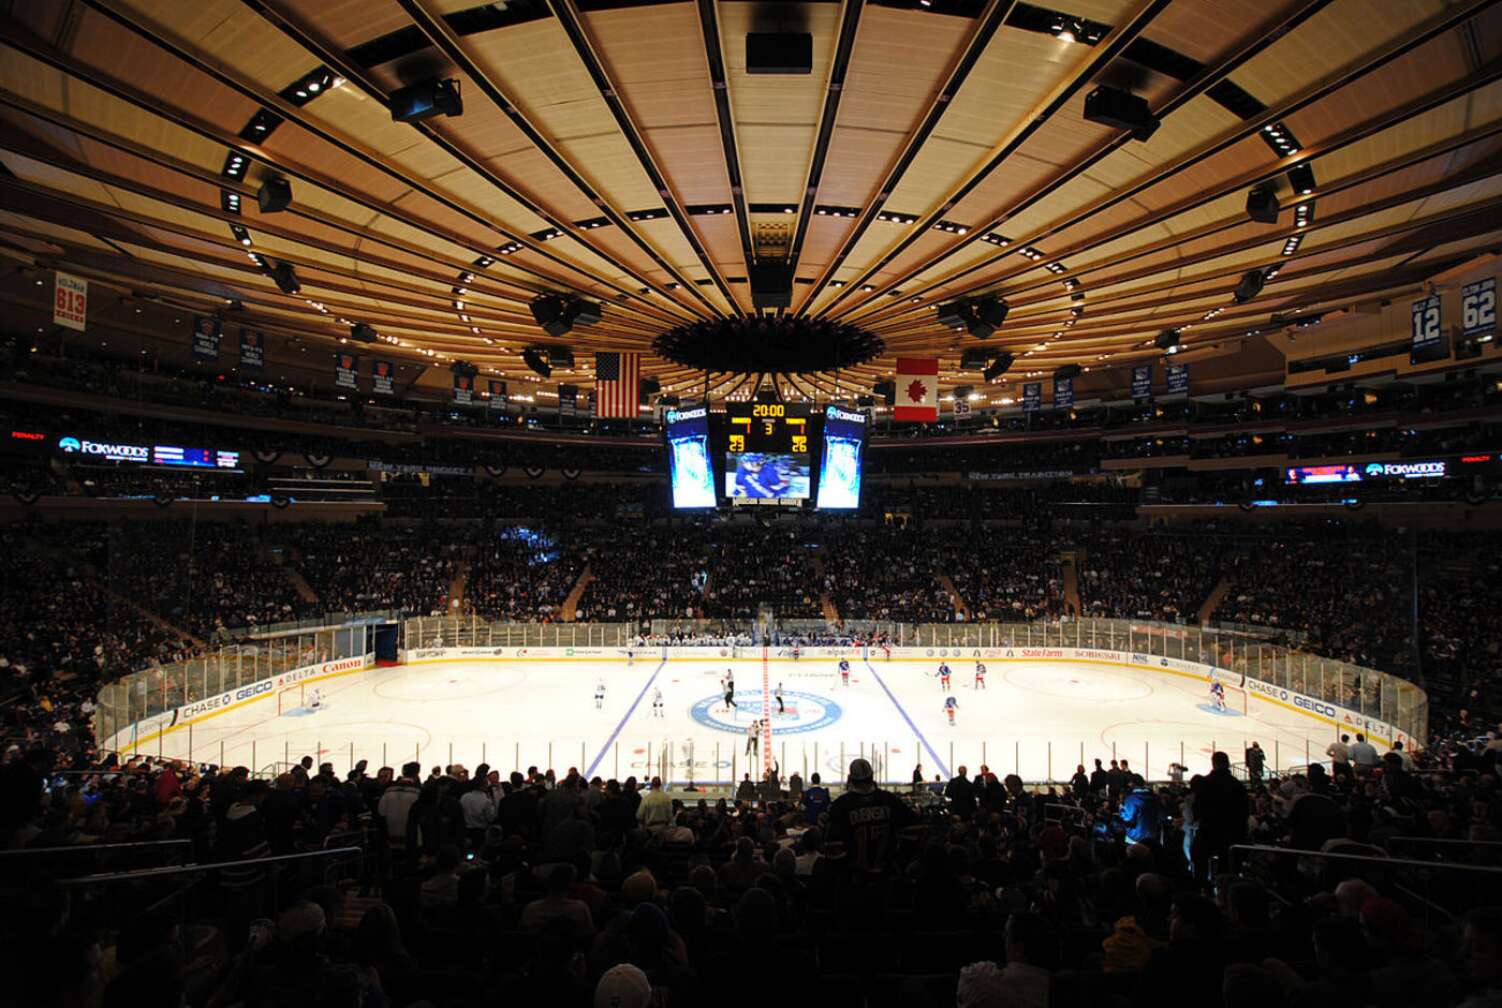 Panorama vom Madison Square Garden in New York, innen, während eines Eishockeyspiels